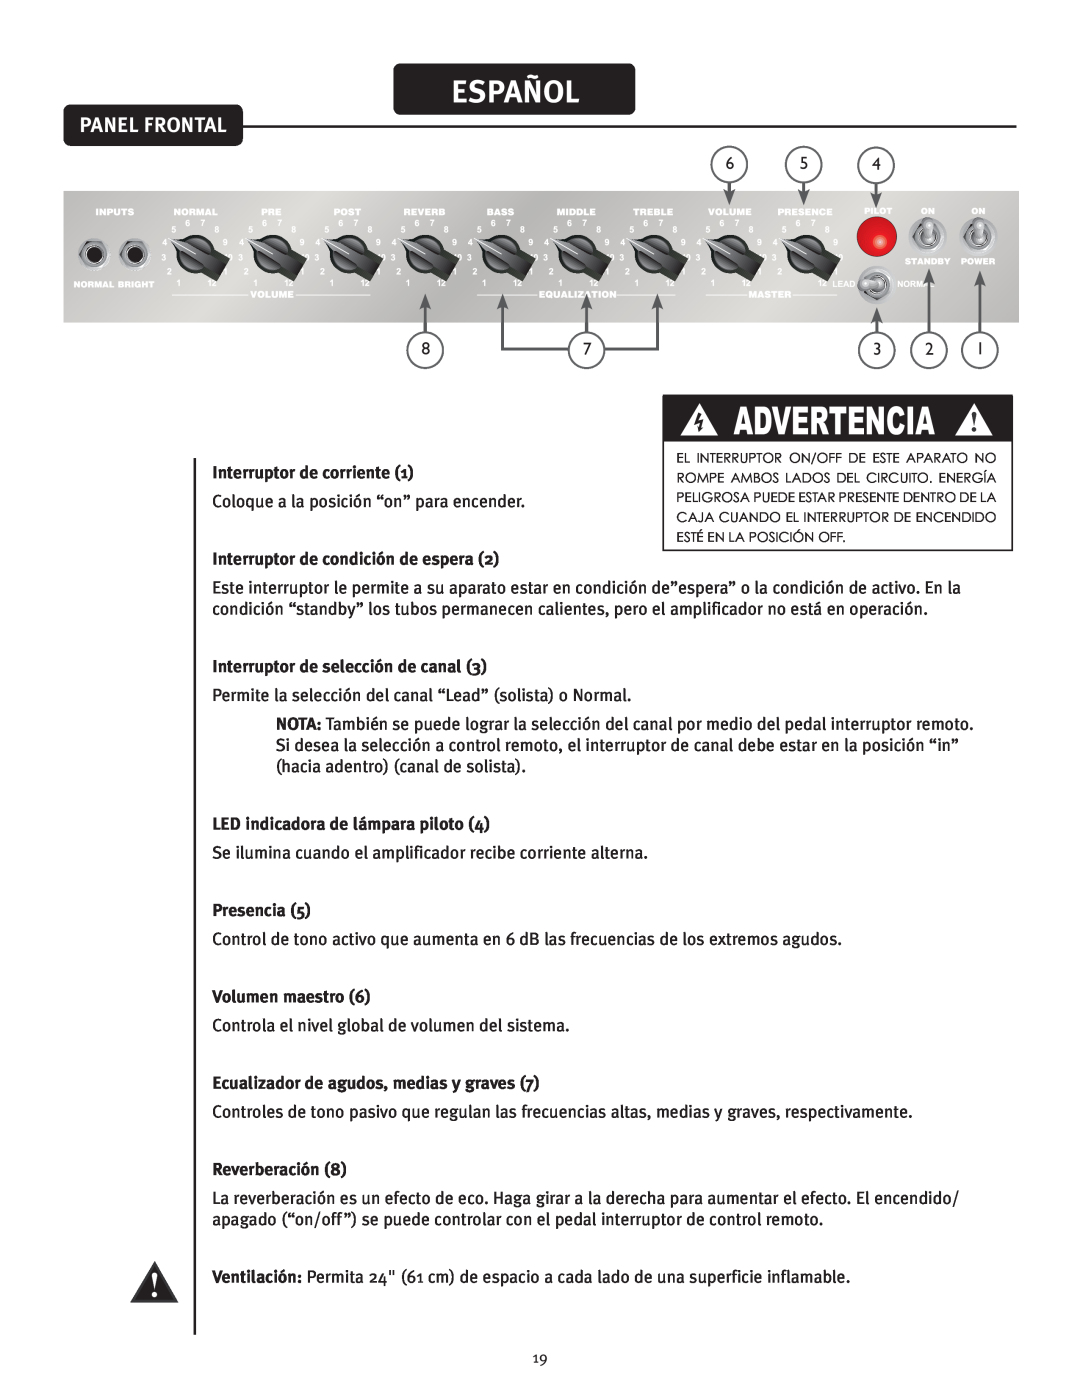 Peavey 50 410 Español, Panel Frontal, Advertencia, Interruptor de corriente, Interruptor de condición de espera, Presencia 